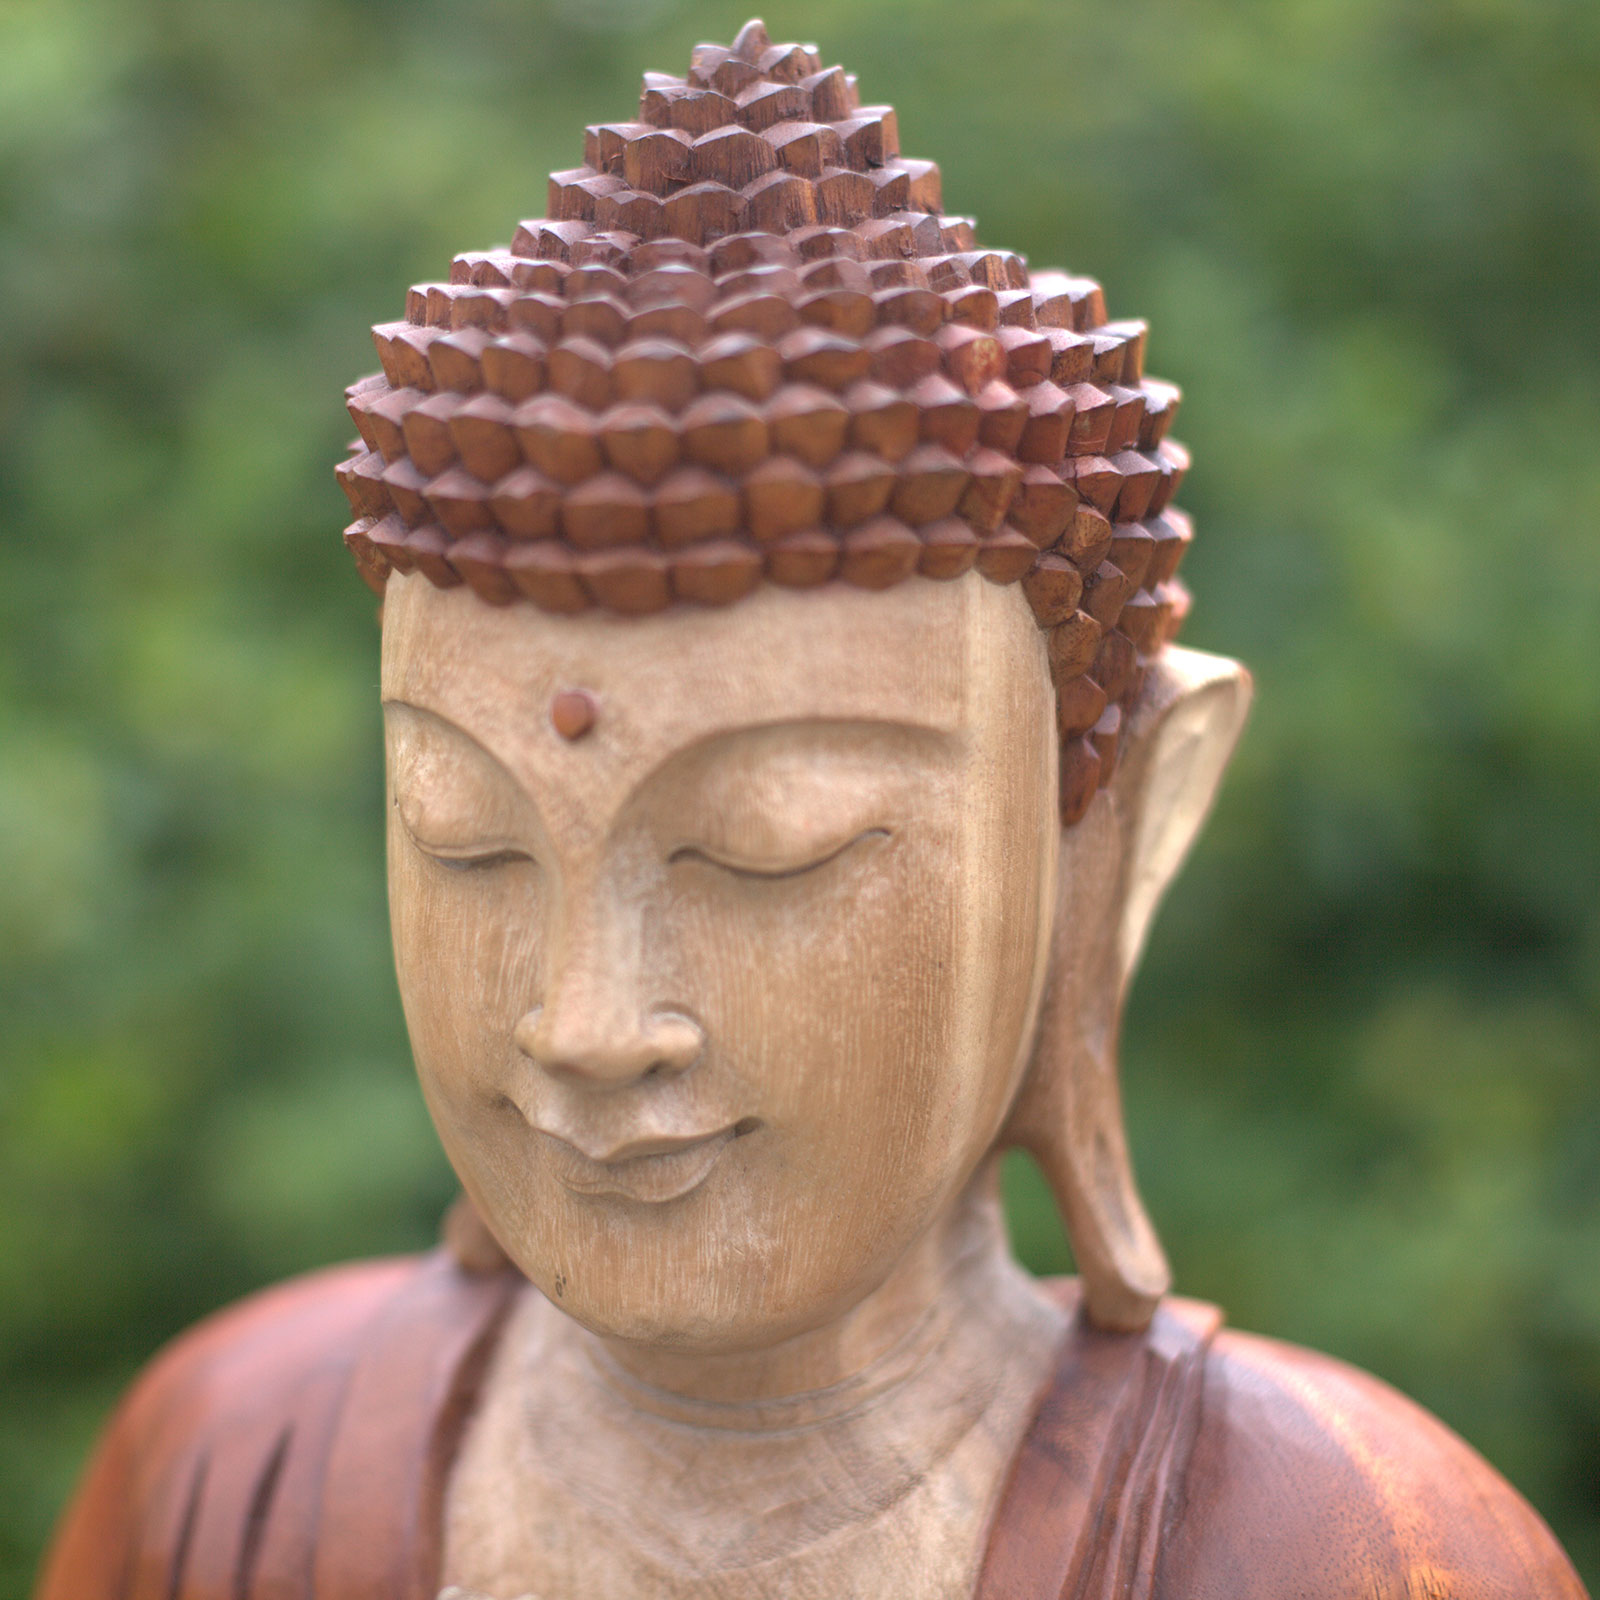 Ručně vyřezávaná socha Buddhy - Učící přenos - 30 cm